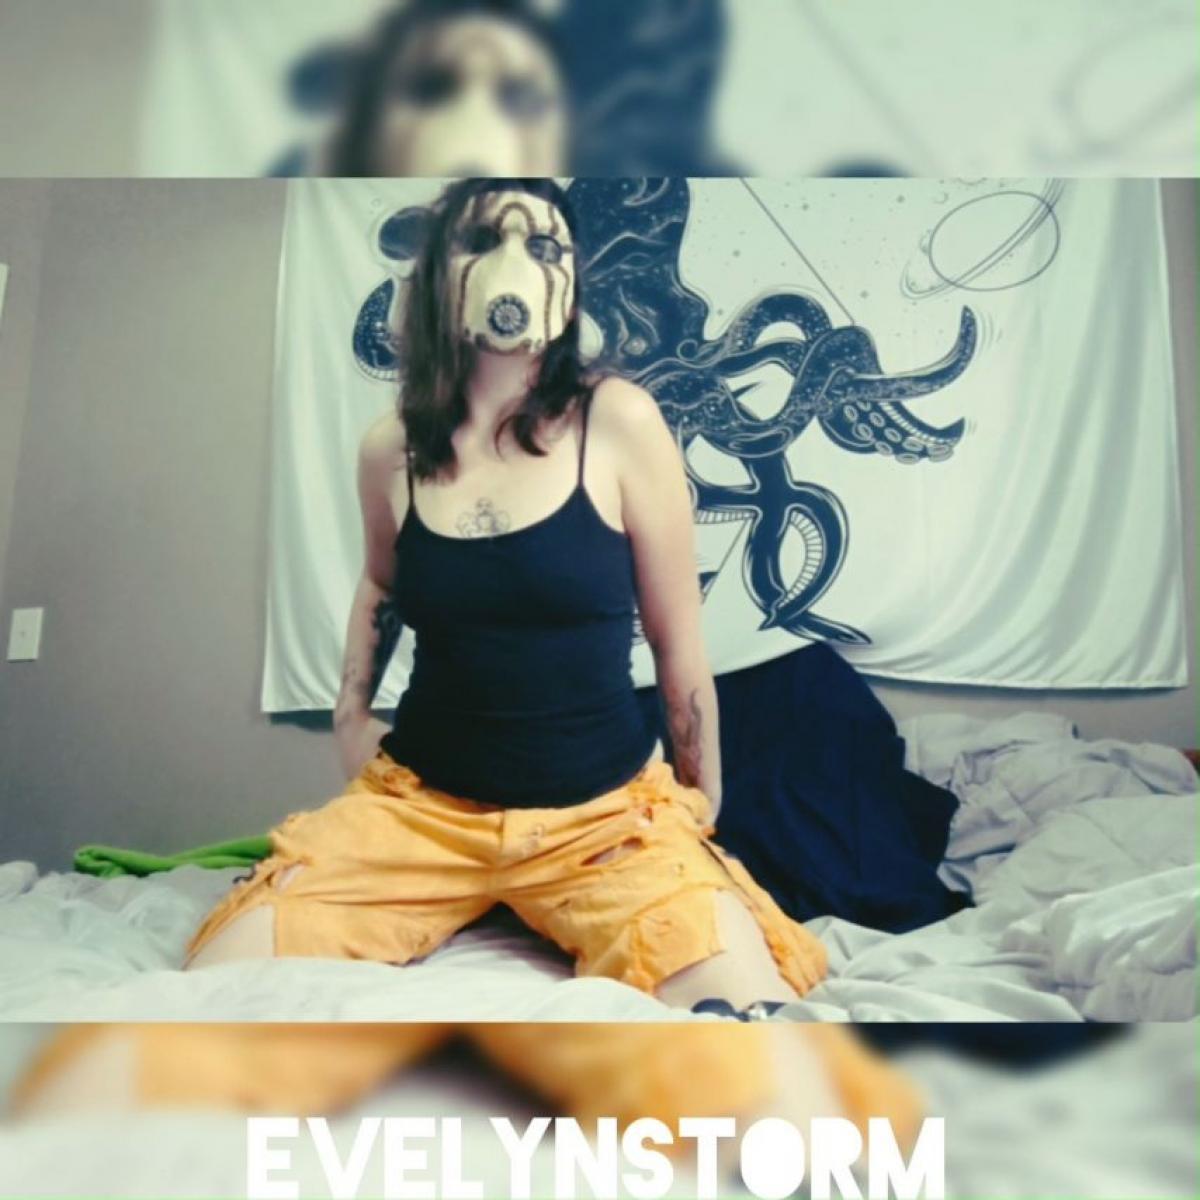 evelynstorm show - 2021/12/25 11:14:20